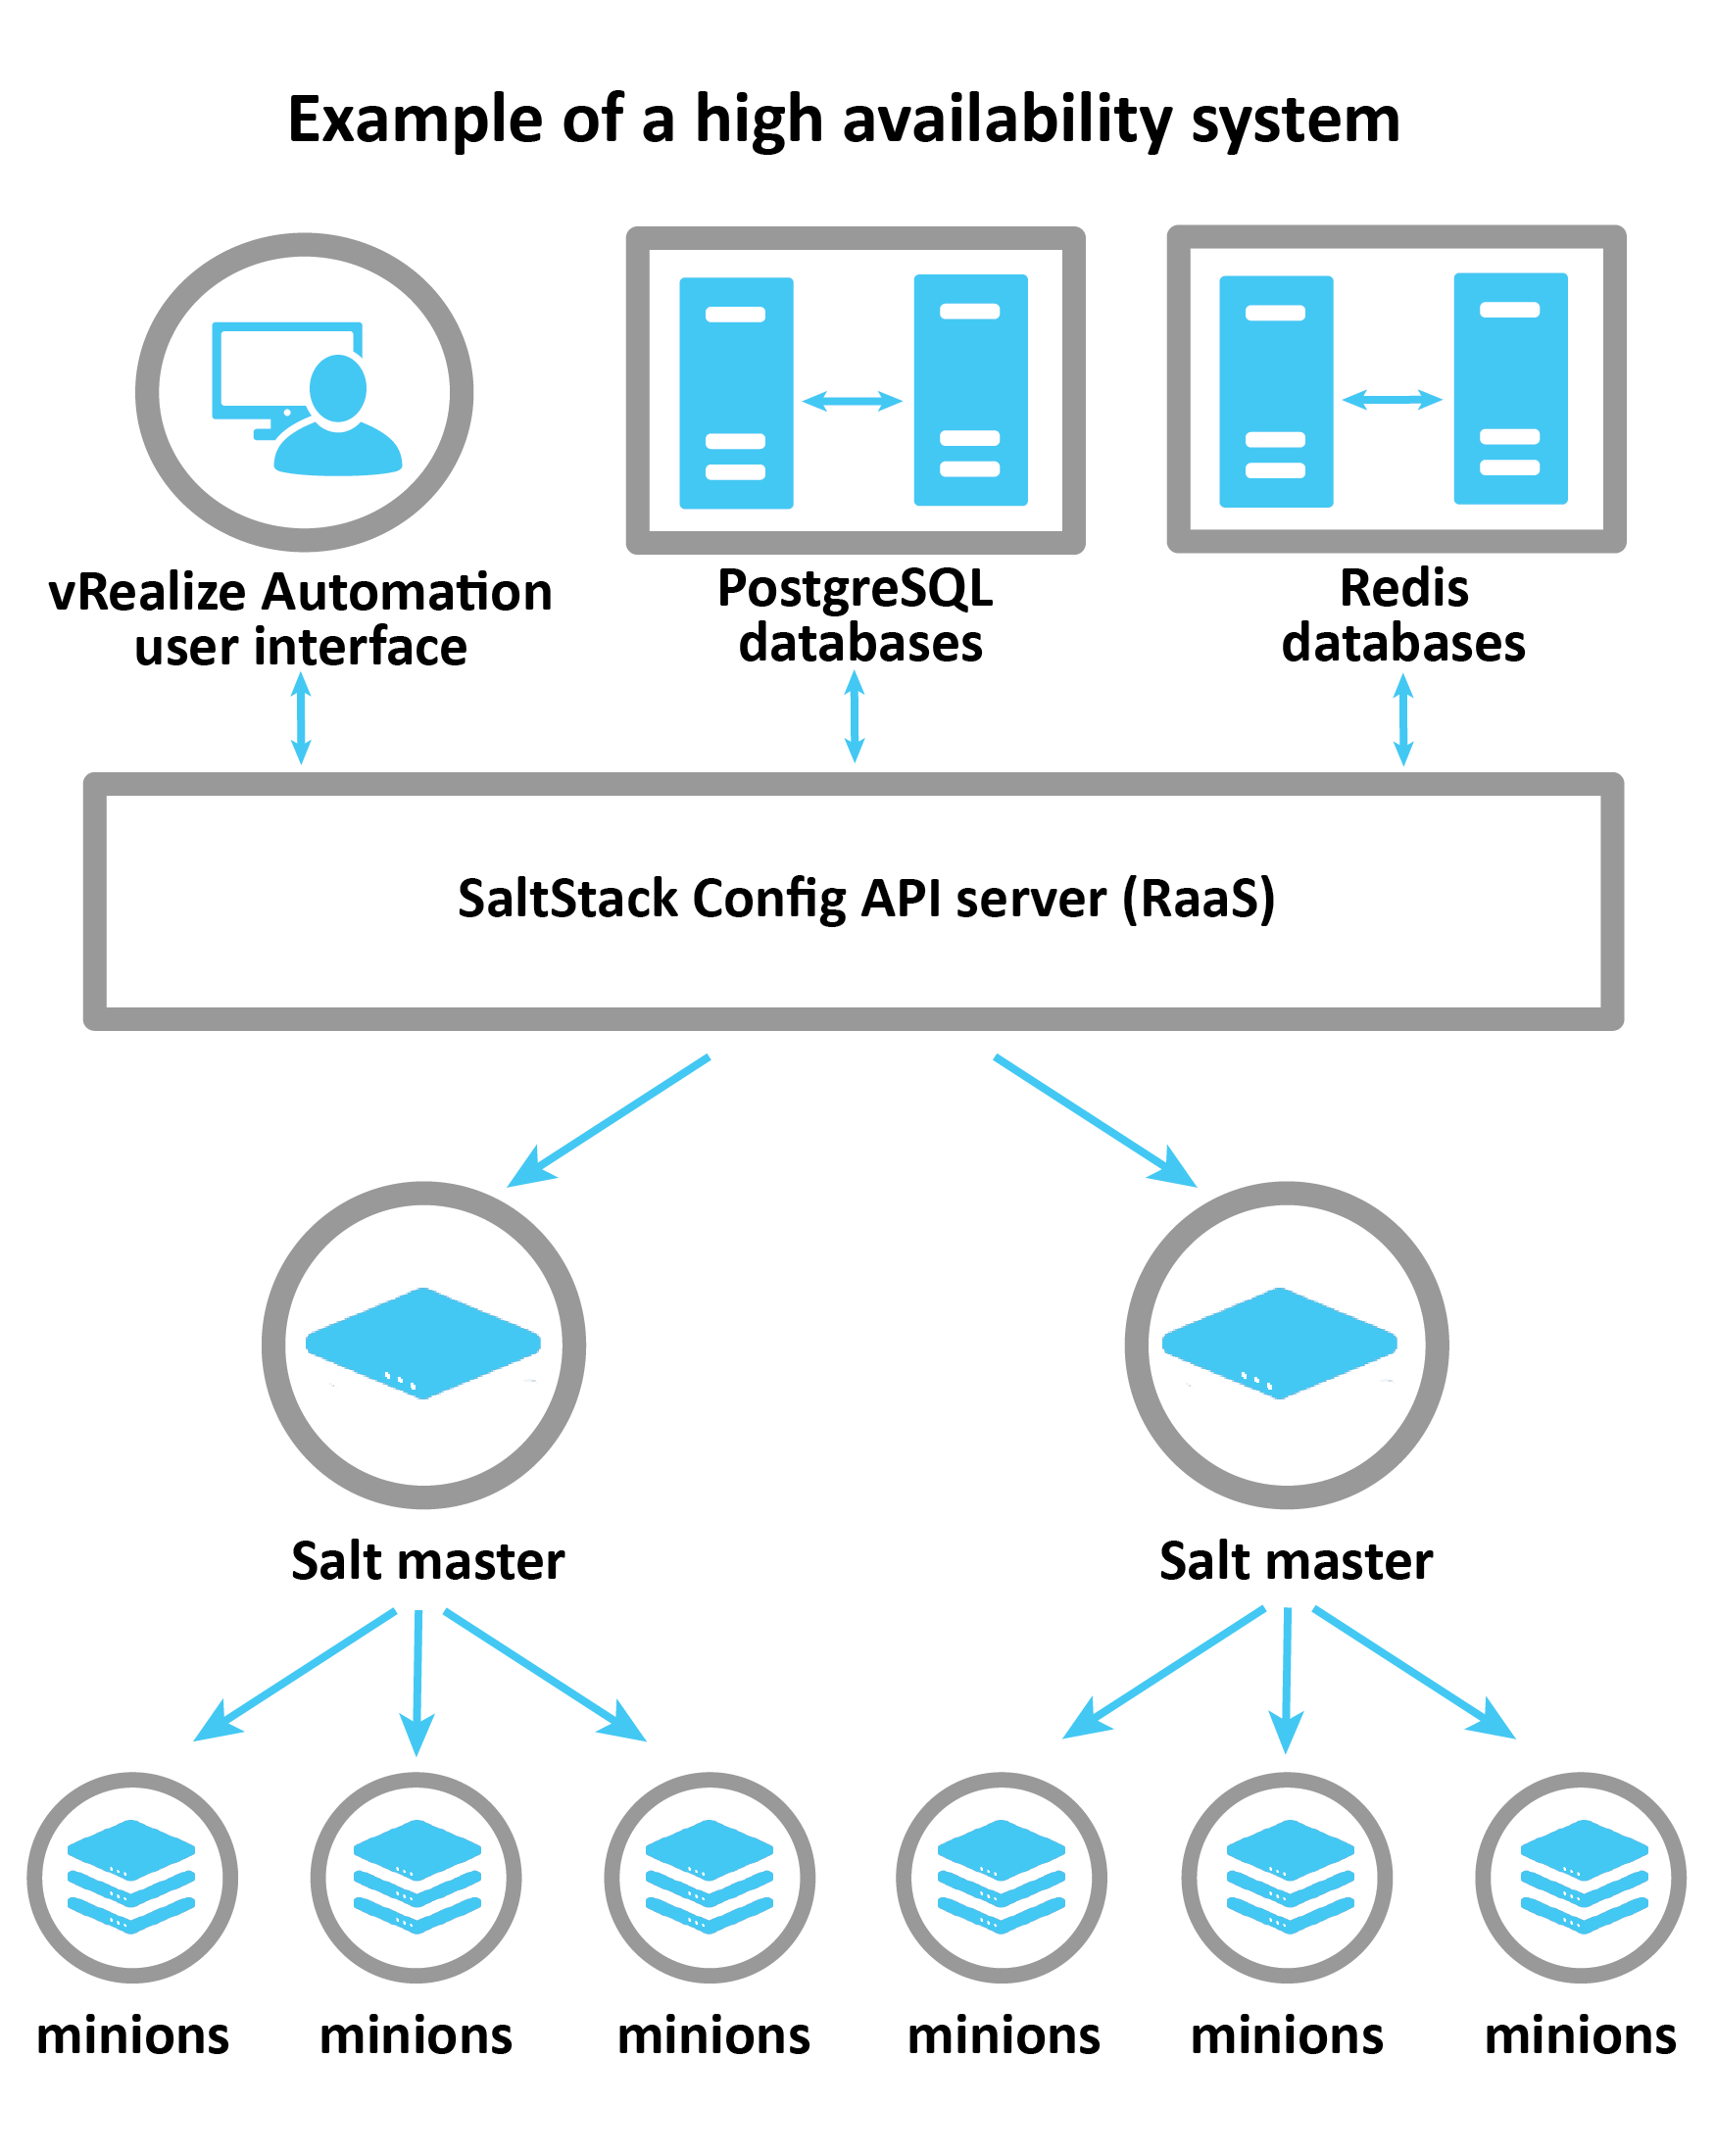 Met dit diagram wordt getoond hoe een systeem met hoge beschikbaarheid eruitziet: de vRA-gebruikersinterface maakt verbinding met de RaaS-server, die meerdere Salt-masters beheert, elk met meerdere minions.